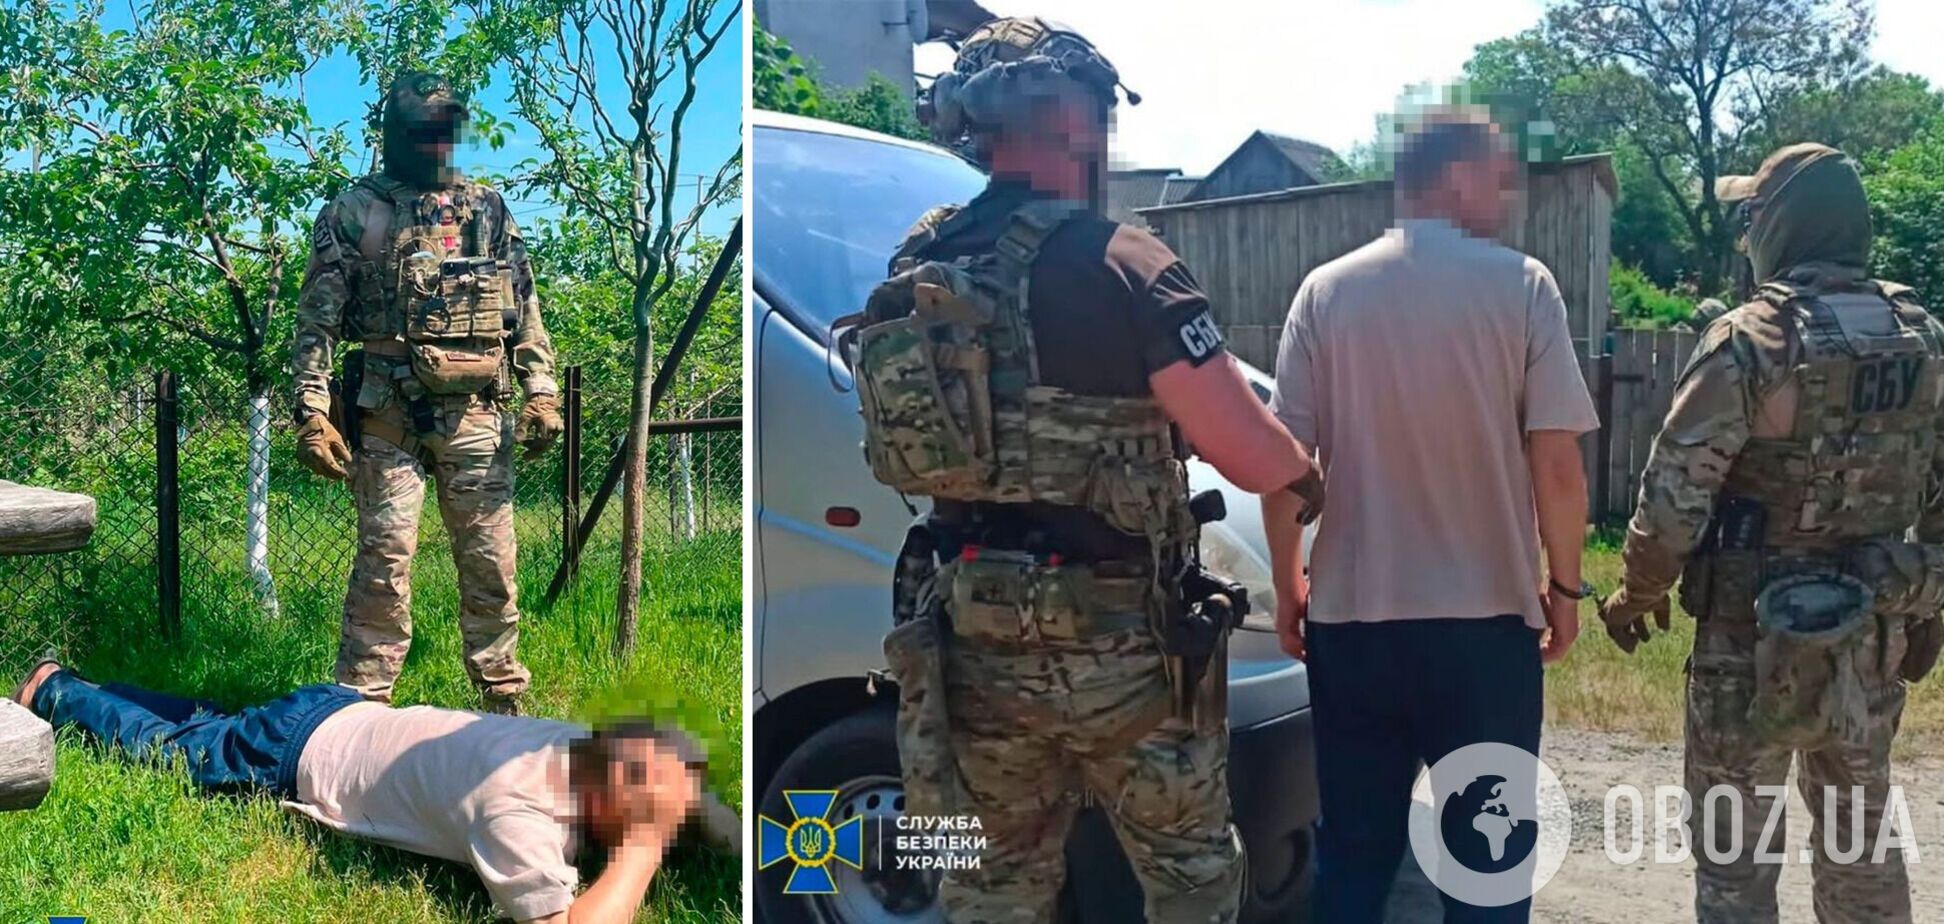 СБУ задержала агента беларуского КГБ, который шпионил за границей на севере Украины. Фото